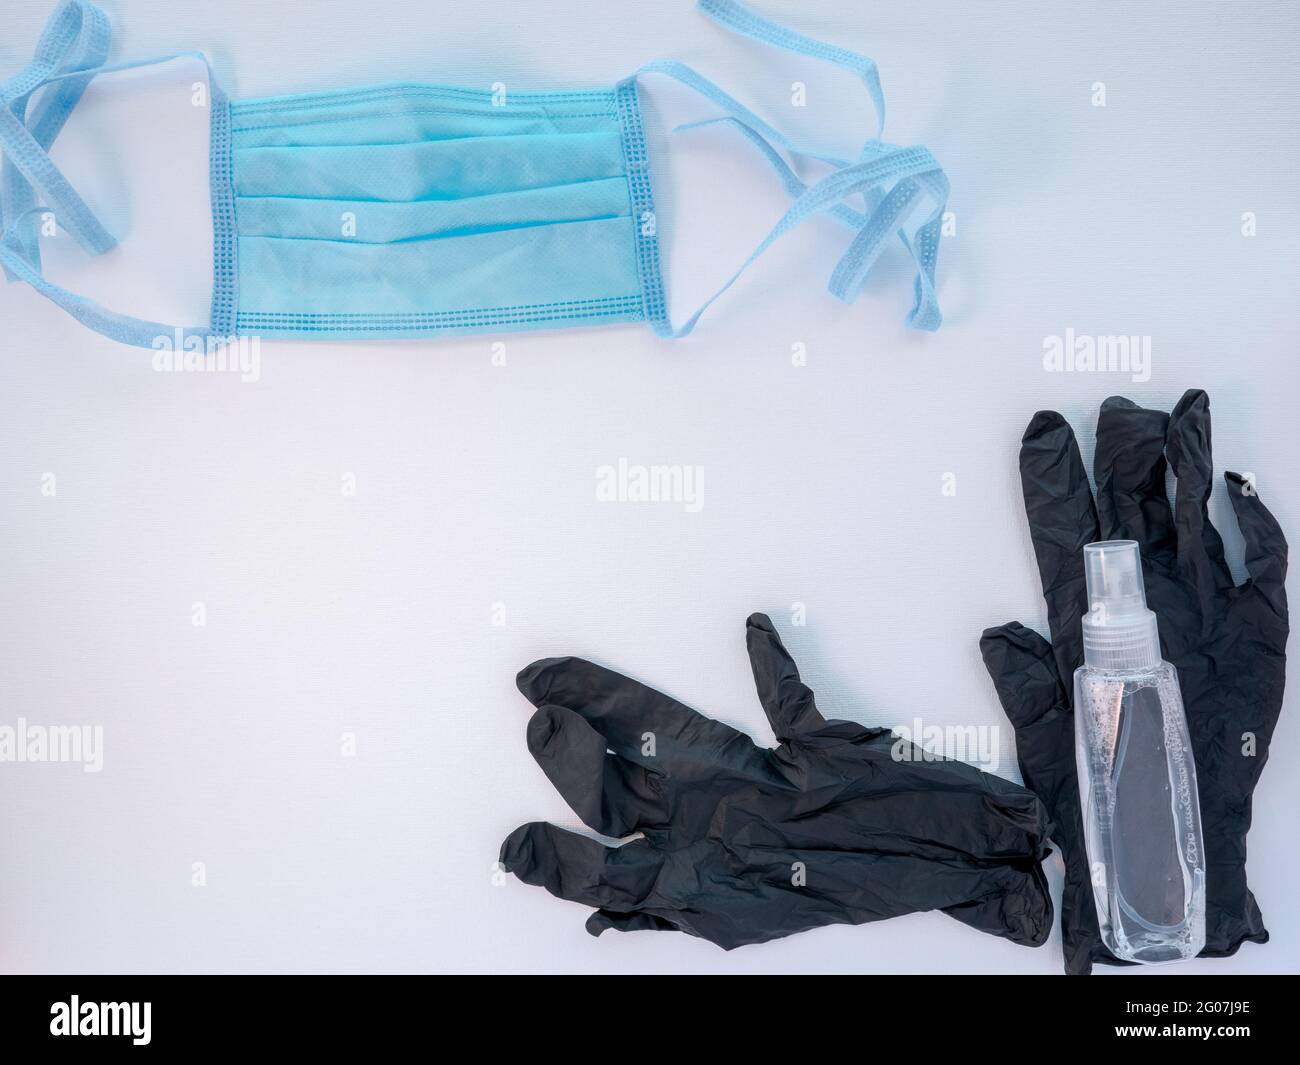 Masque de protection pour le visage médical bleu, une paire de gants en latex noir et une bouteille de désinfectant pour les mains sur fond blanc. Concept de protection antivirale. Banque D'Images